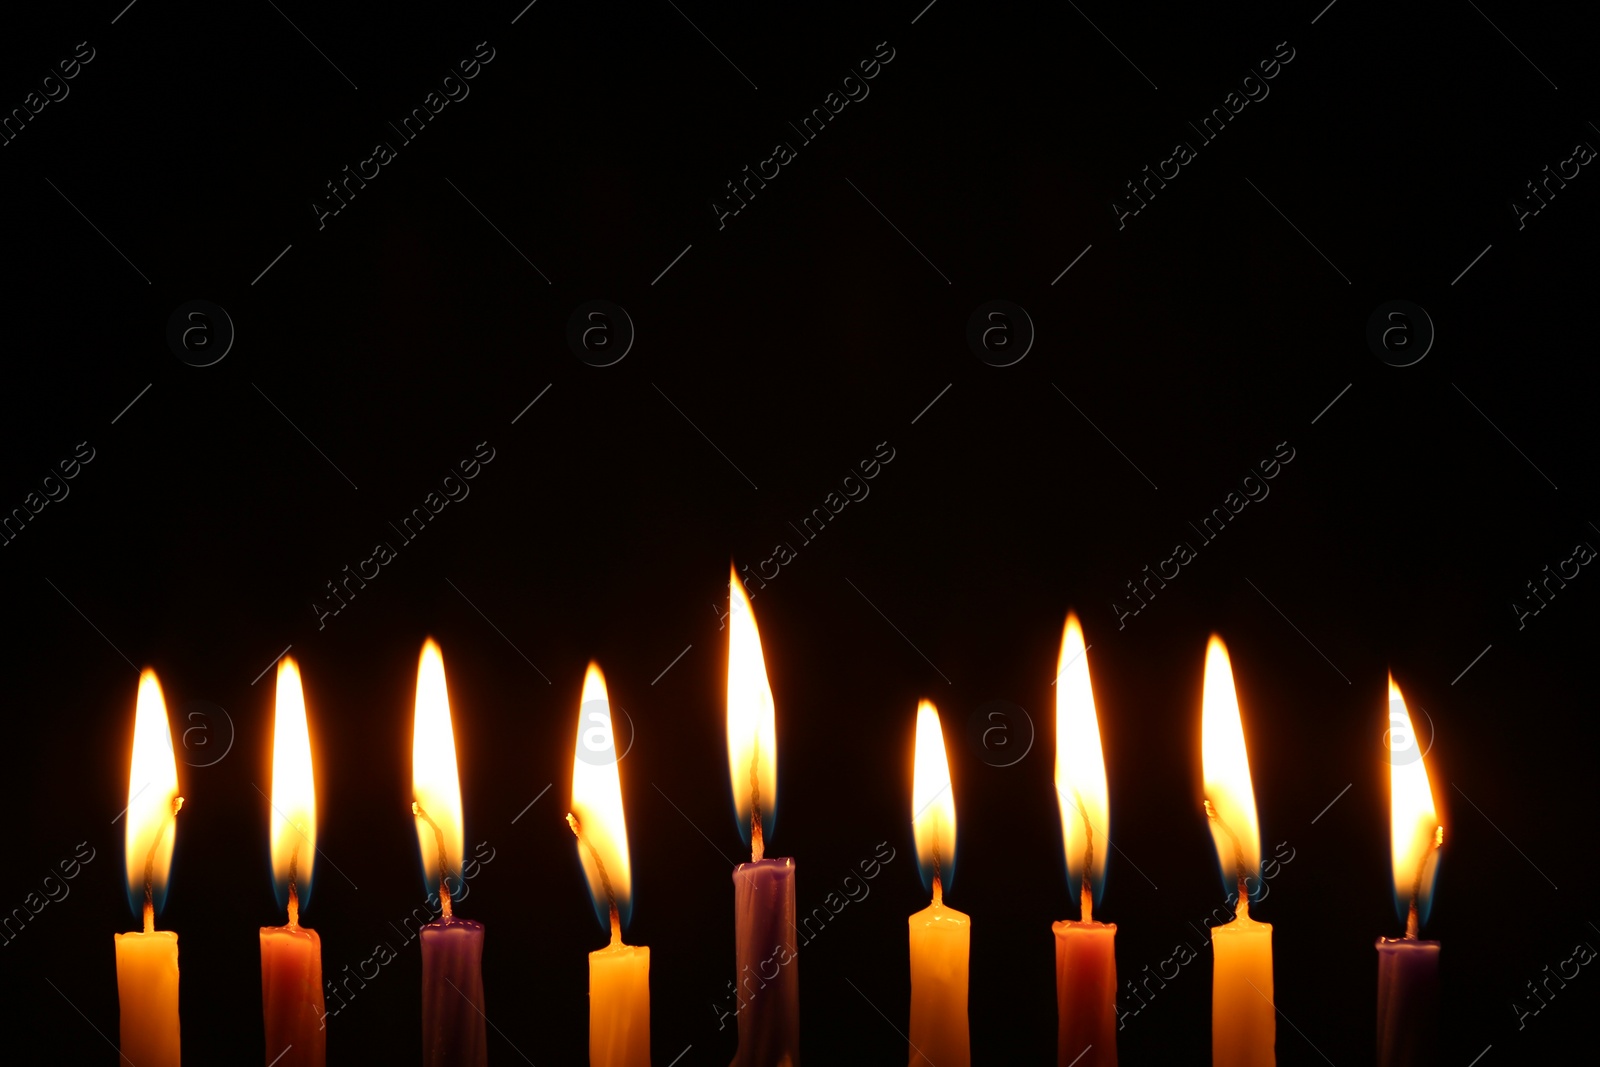 Photo of Hanukkah celebration. Burning candles on black background